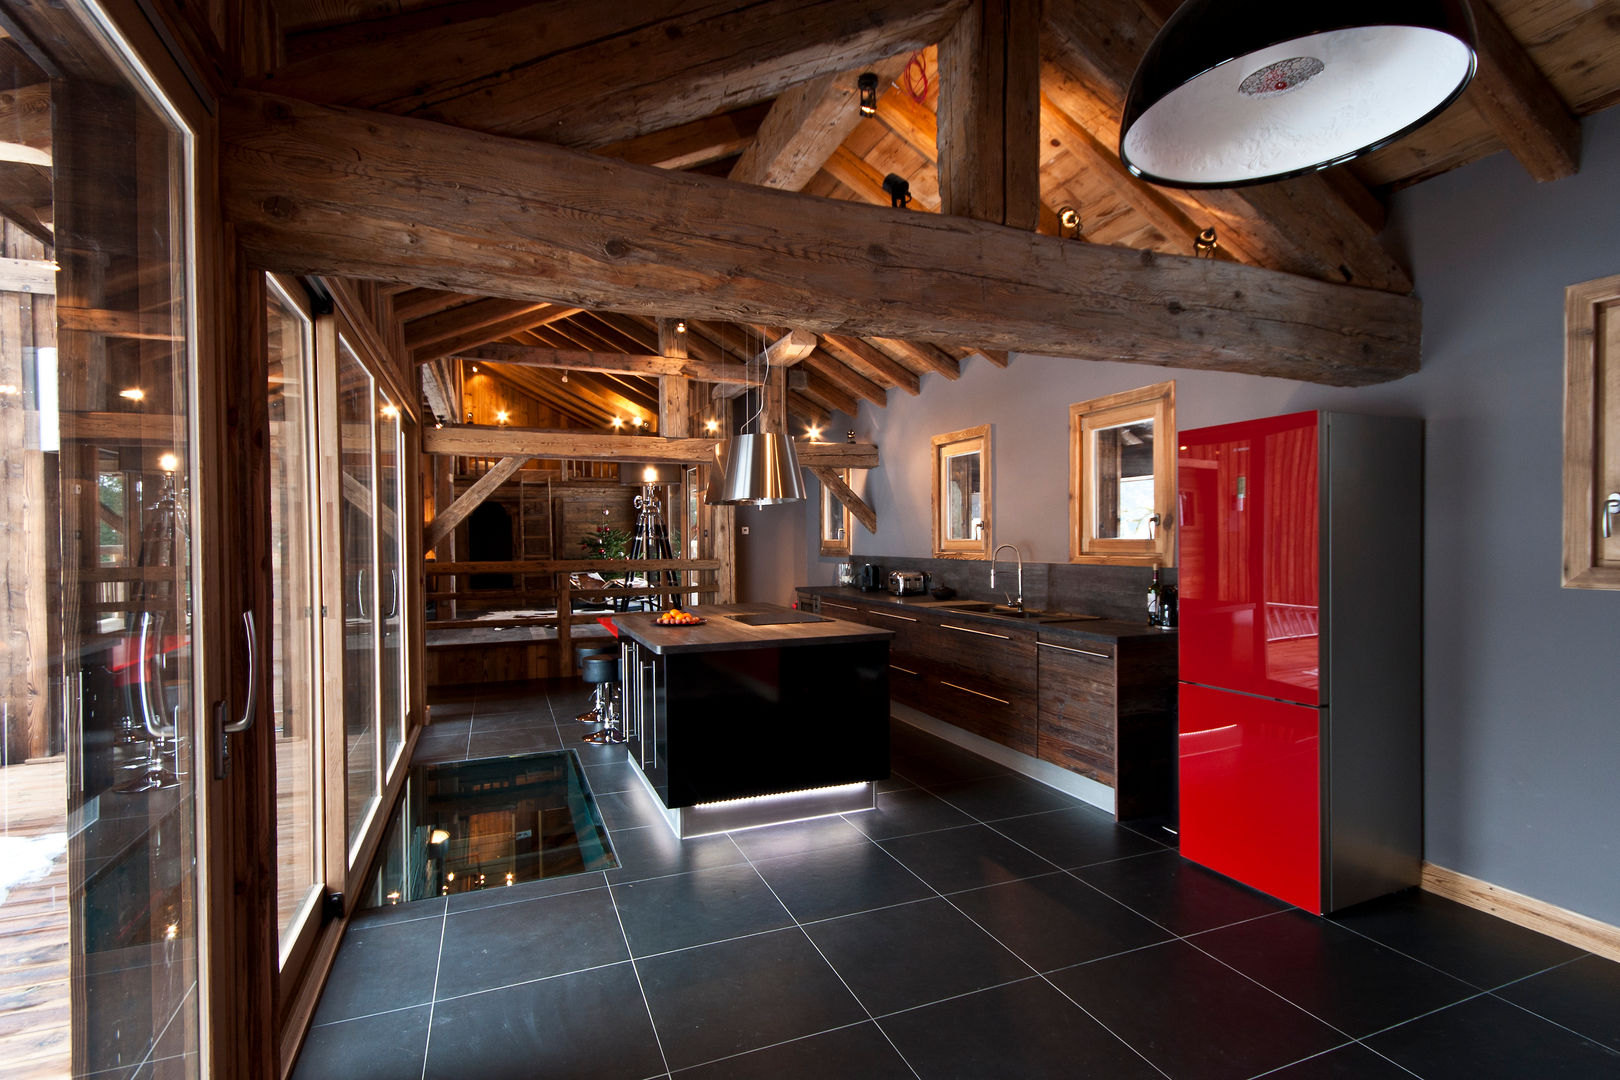 Chalet de Claude: un chalet de luxe, mais distinctif avec un intérieur en rouge et noir, shep&kyles design shep&kyles design Country style kitchen